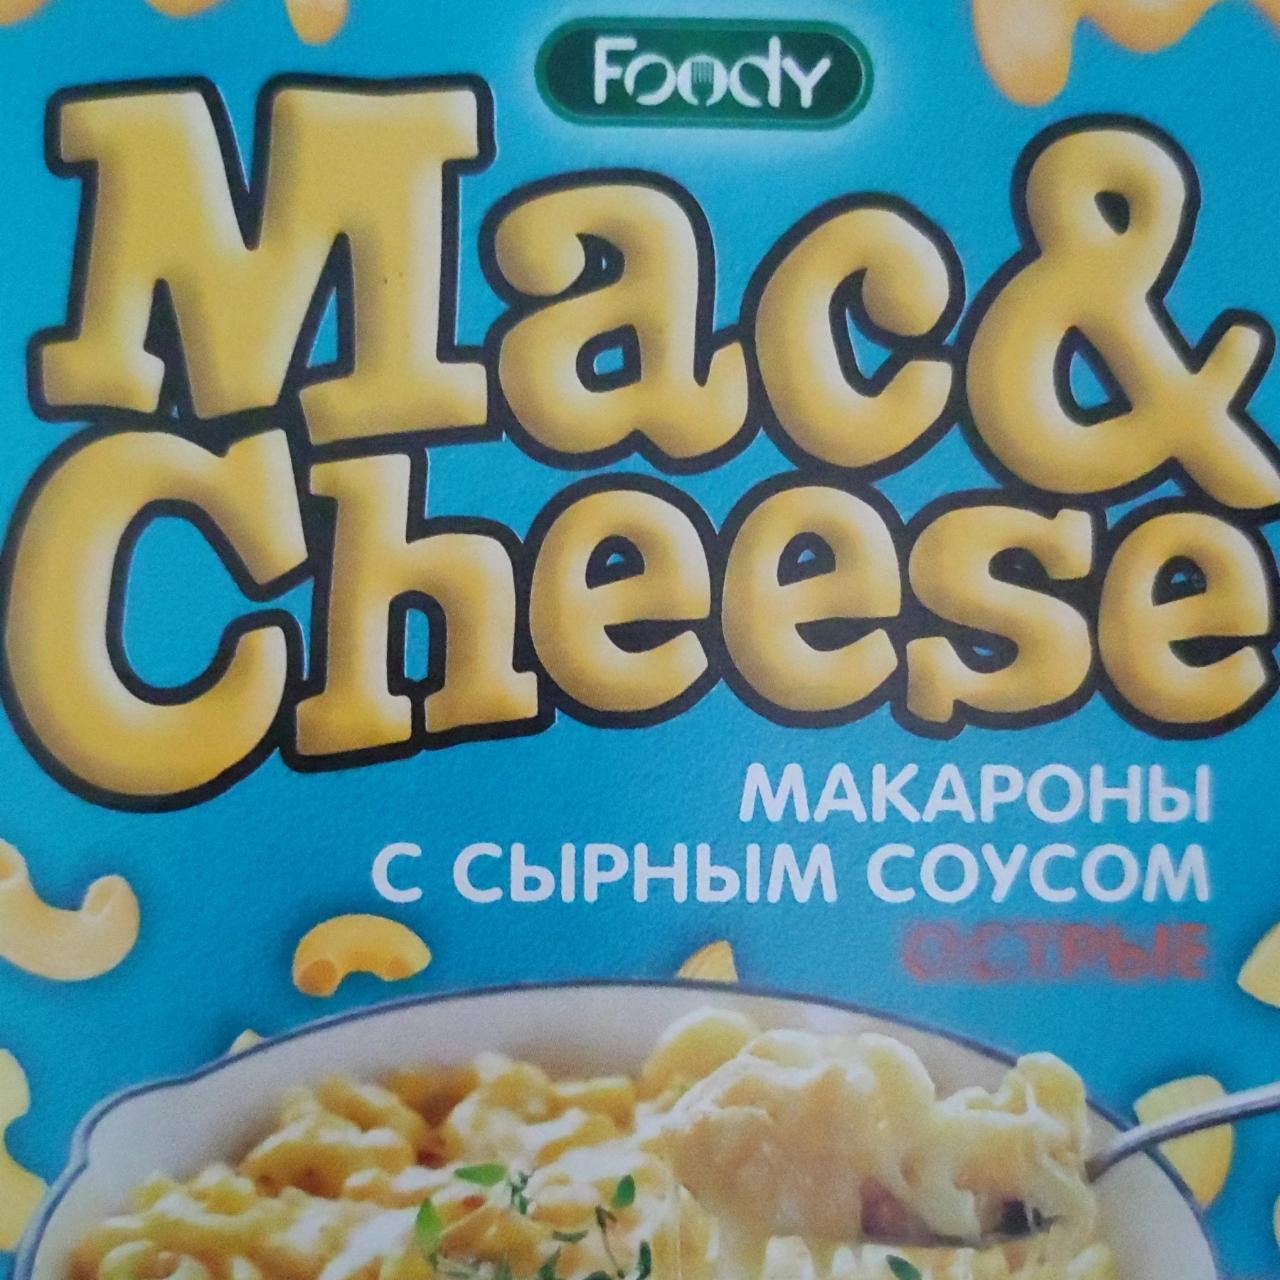 Фото - Макароны Mac&Cheese с сырным соусом c пряными травами острый Foody